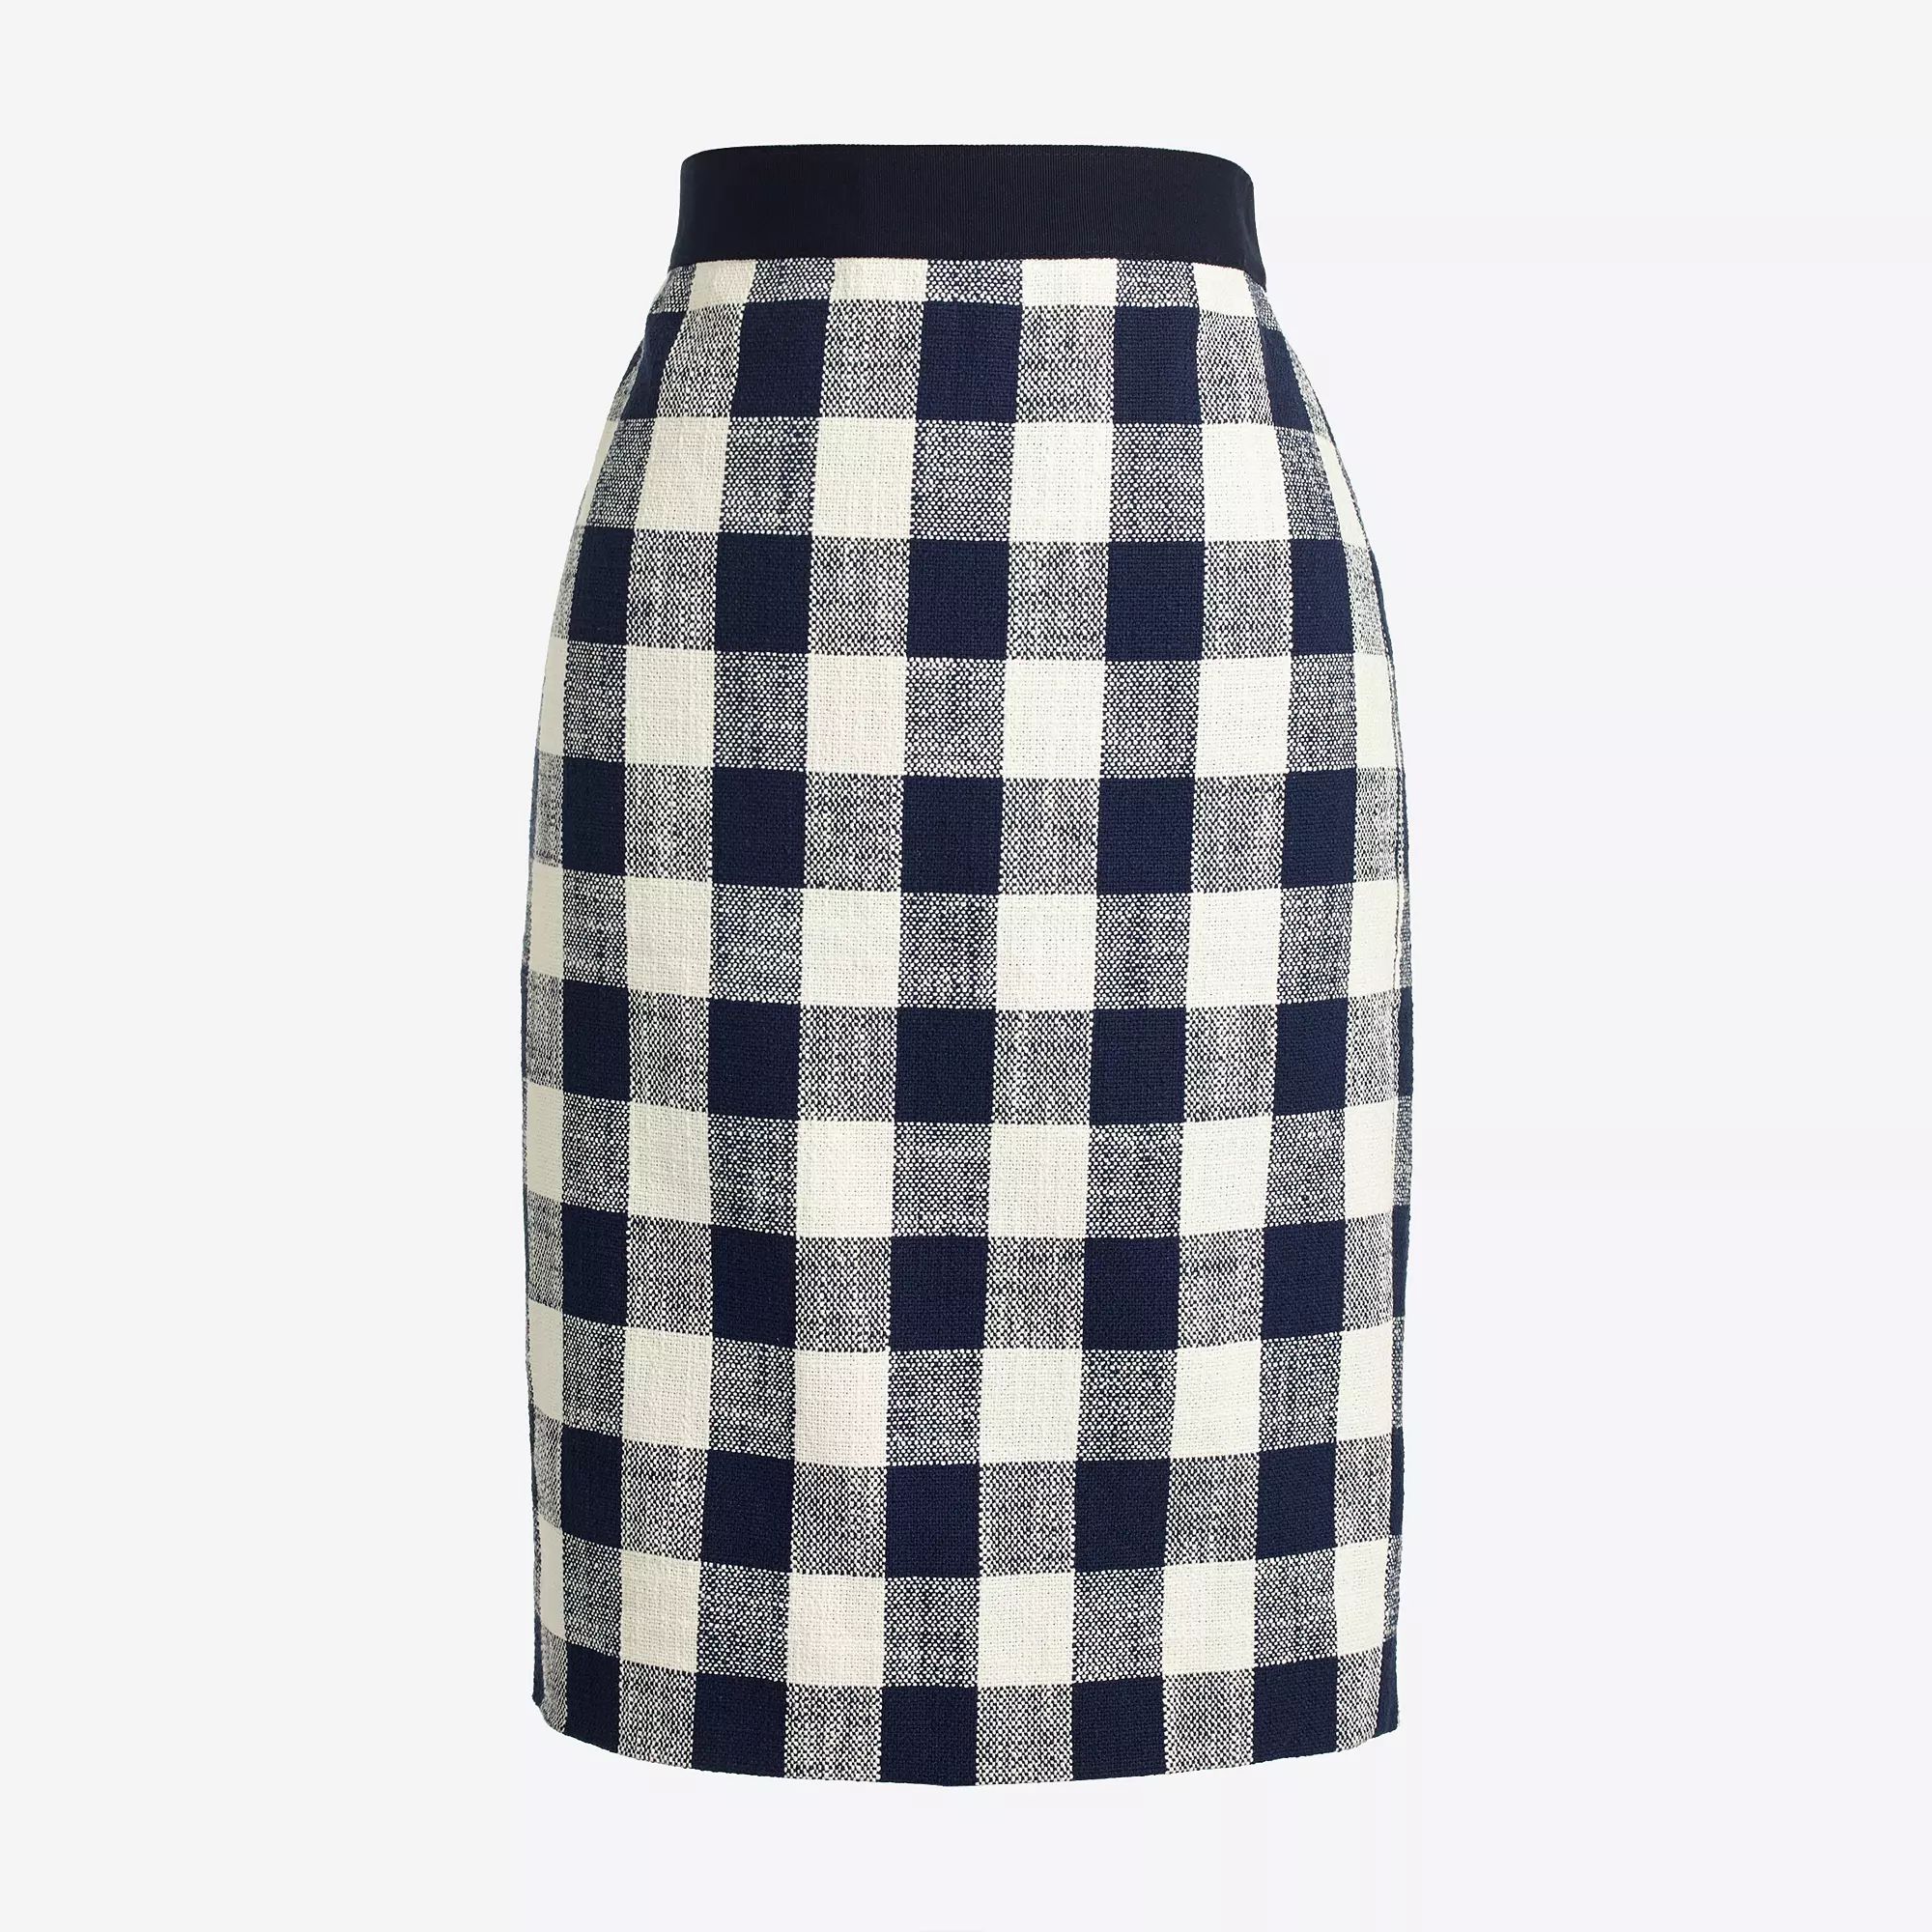 Pencil skirt in cotton-linen tweed | J.Crew Factory